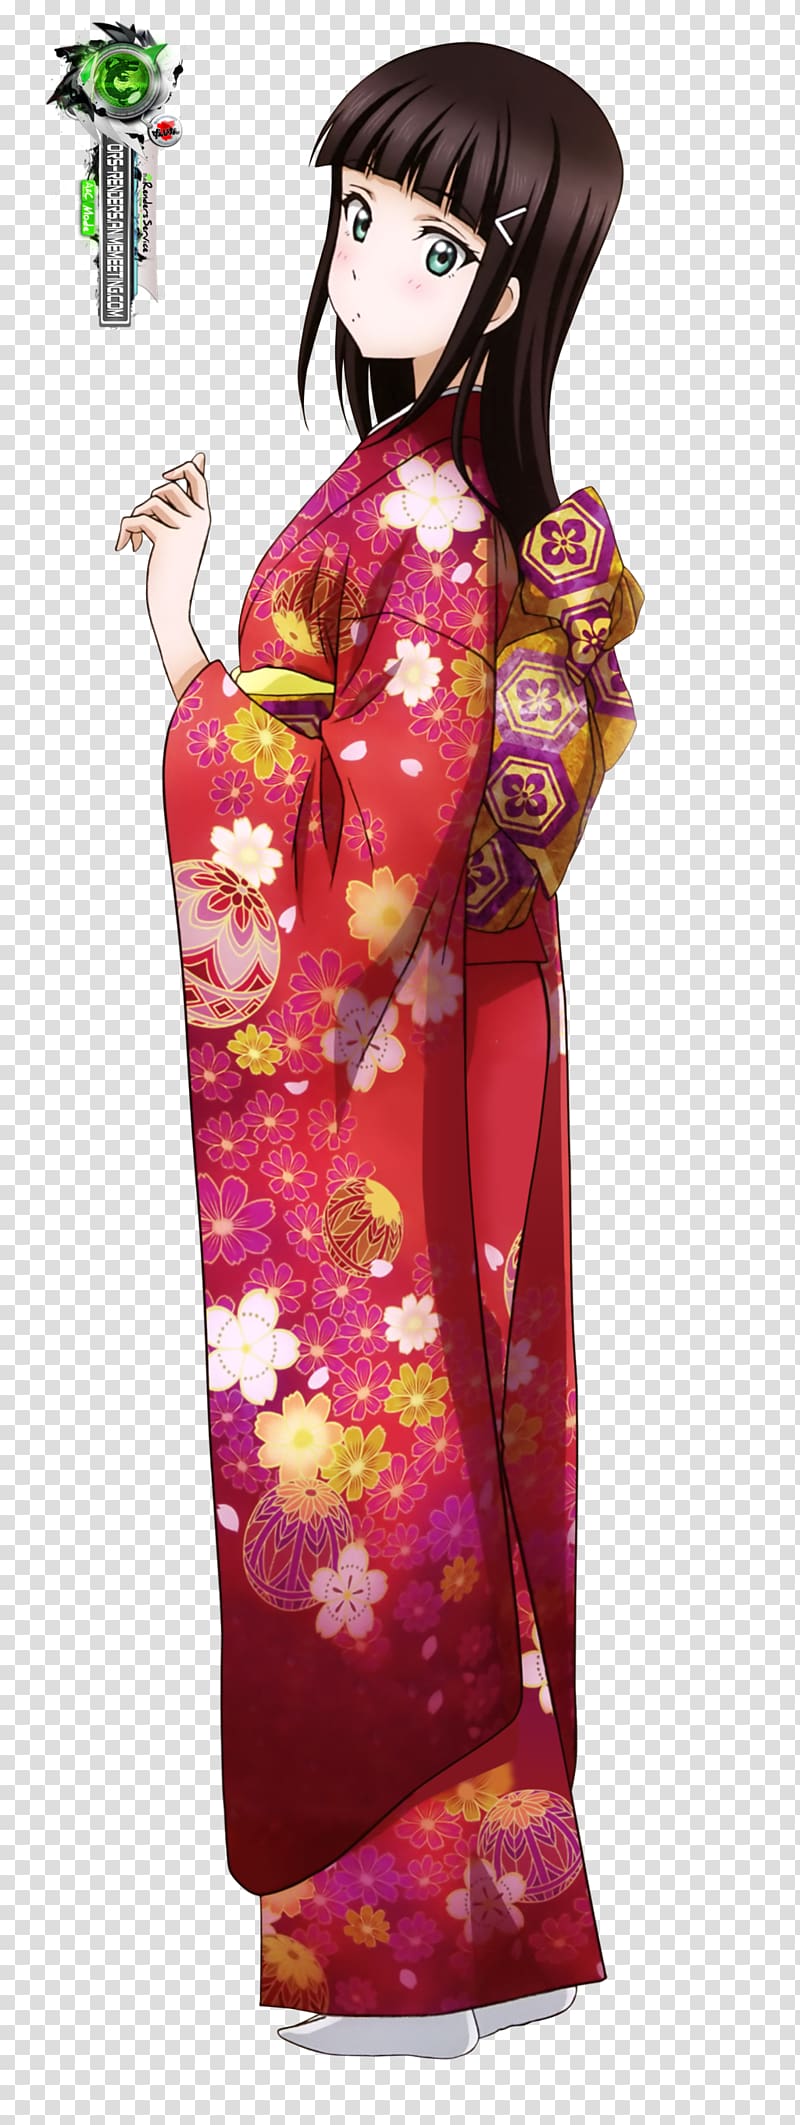 Kimono Clothing Love Live! Sunshine!! Dress, kimono transparent background PNG clipart